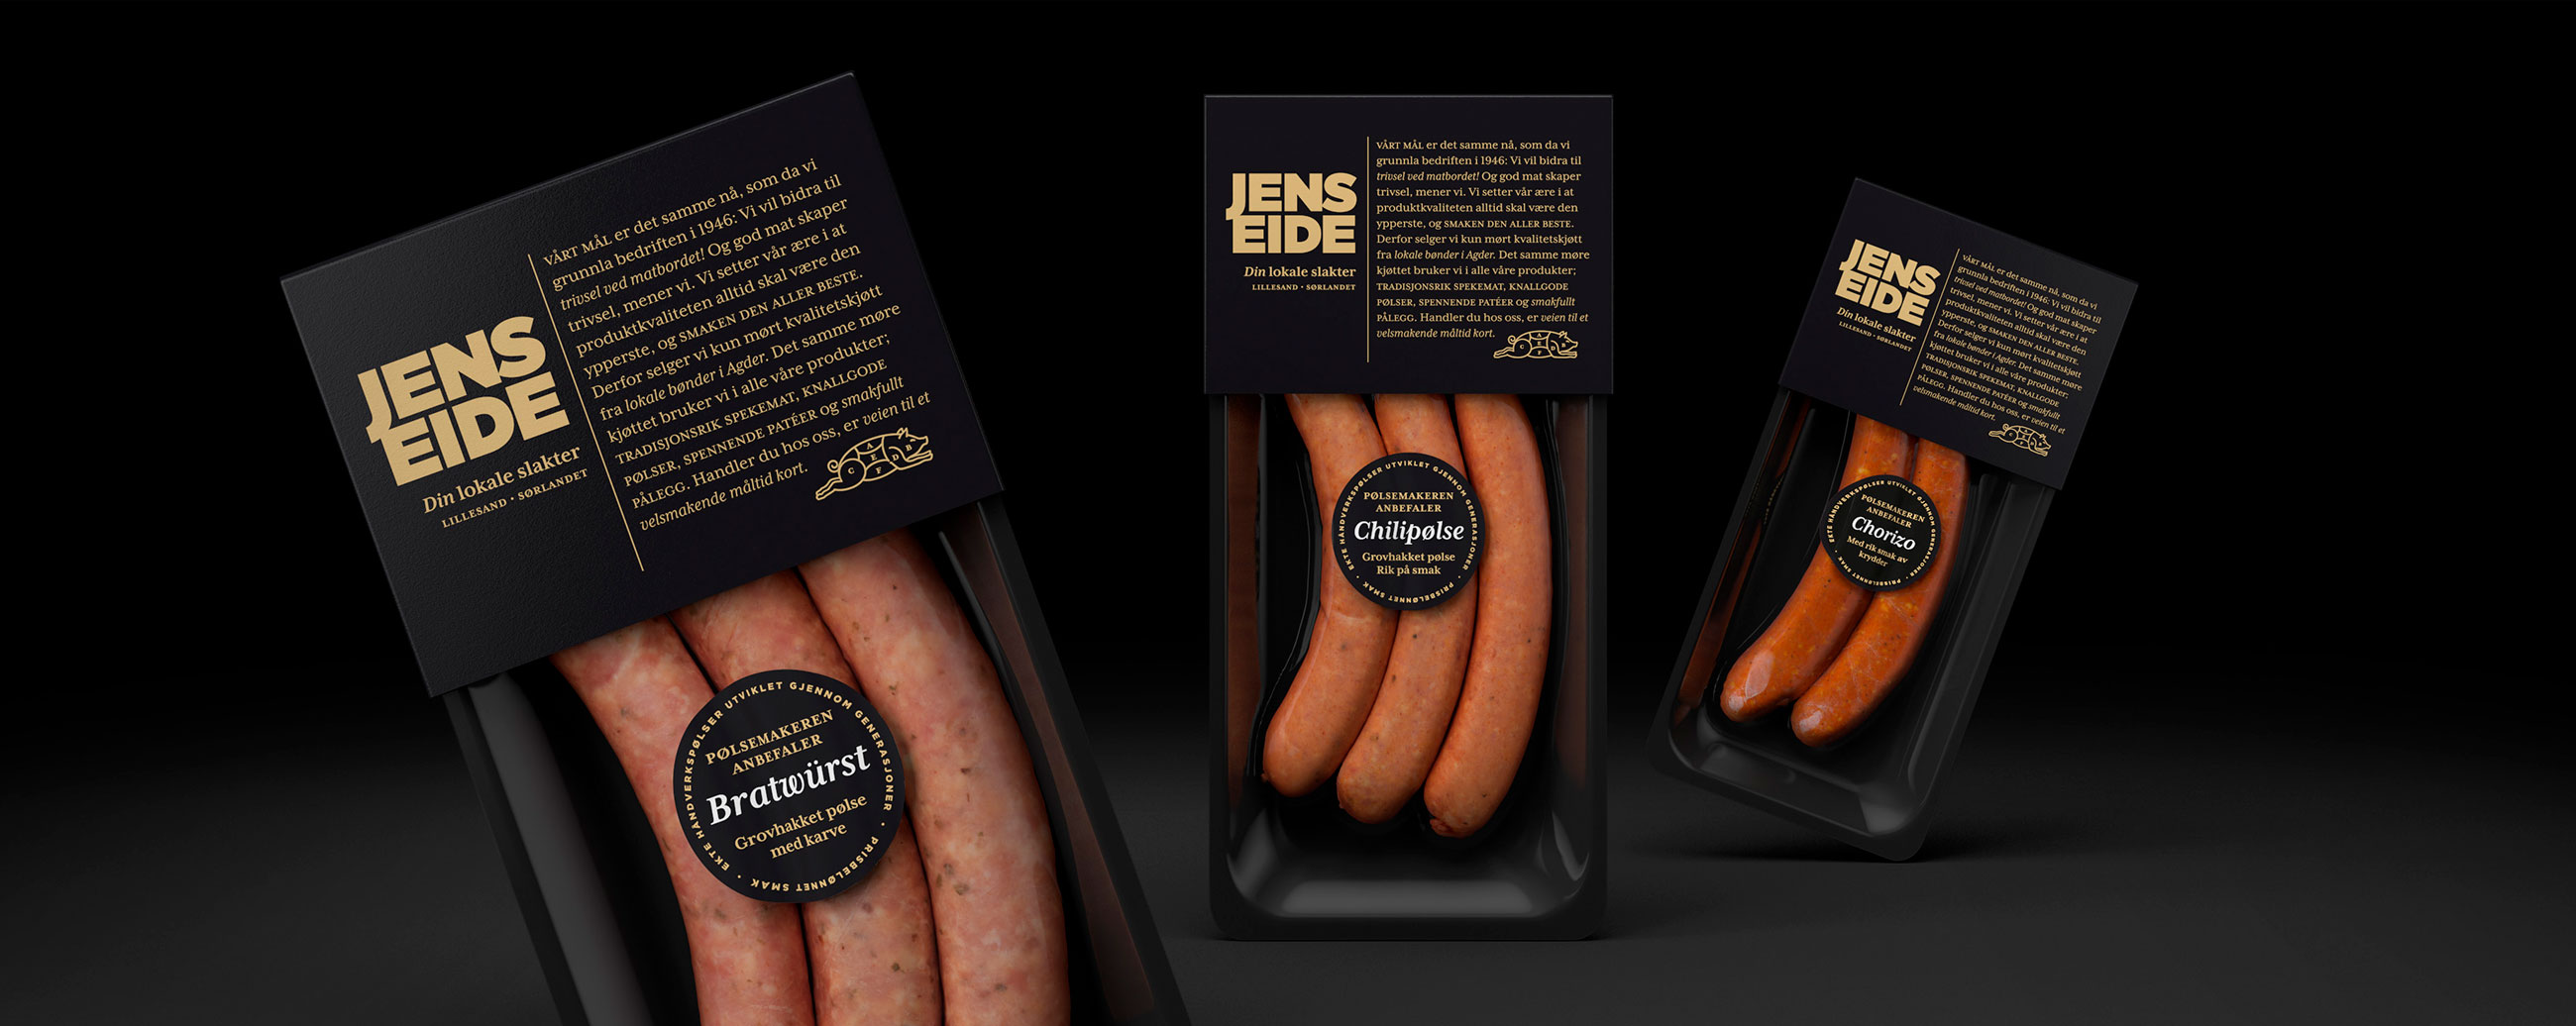 Jens Eide slakter butcher pølser sausages, bratwürst, chillipølse, chorizo. Emballasje packaging design.